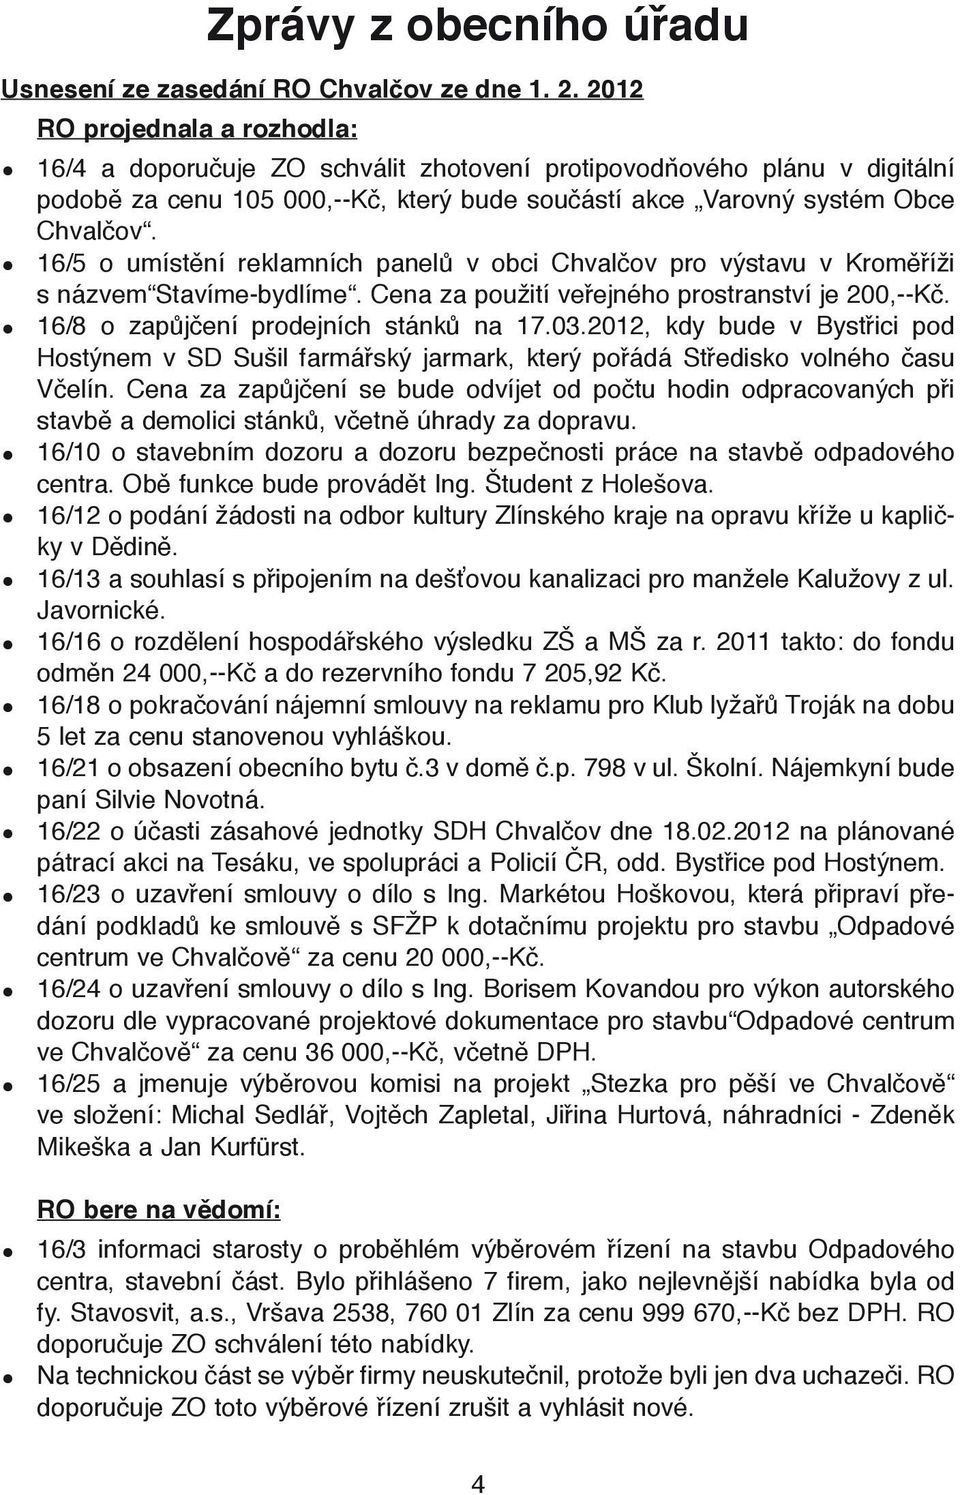 16/5 o umístění reklamních panelů v obci Chvalčov pro výstavu v Kroměříži s názvem Stavíme-bydlíme. Cena za použití veřejného prostranství je 200,--Kč. 16/8 o zapůjčení prodejních stánků na 17.03.